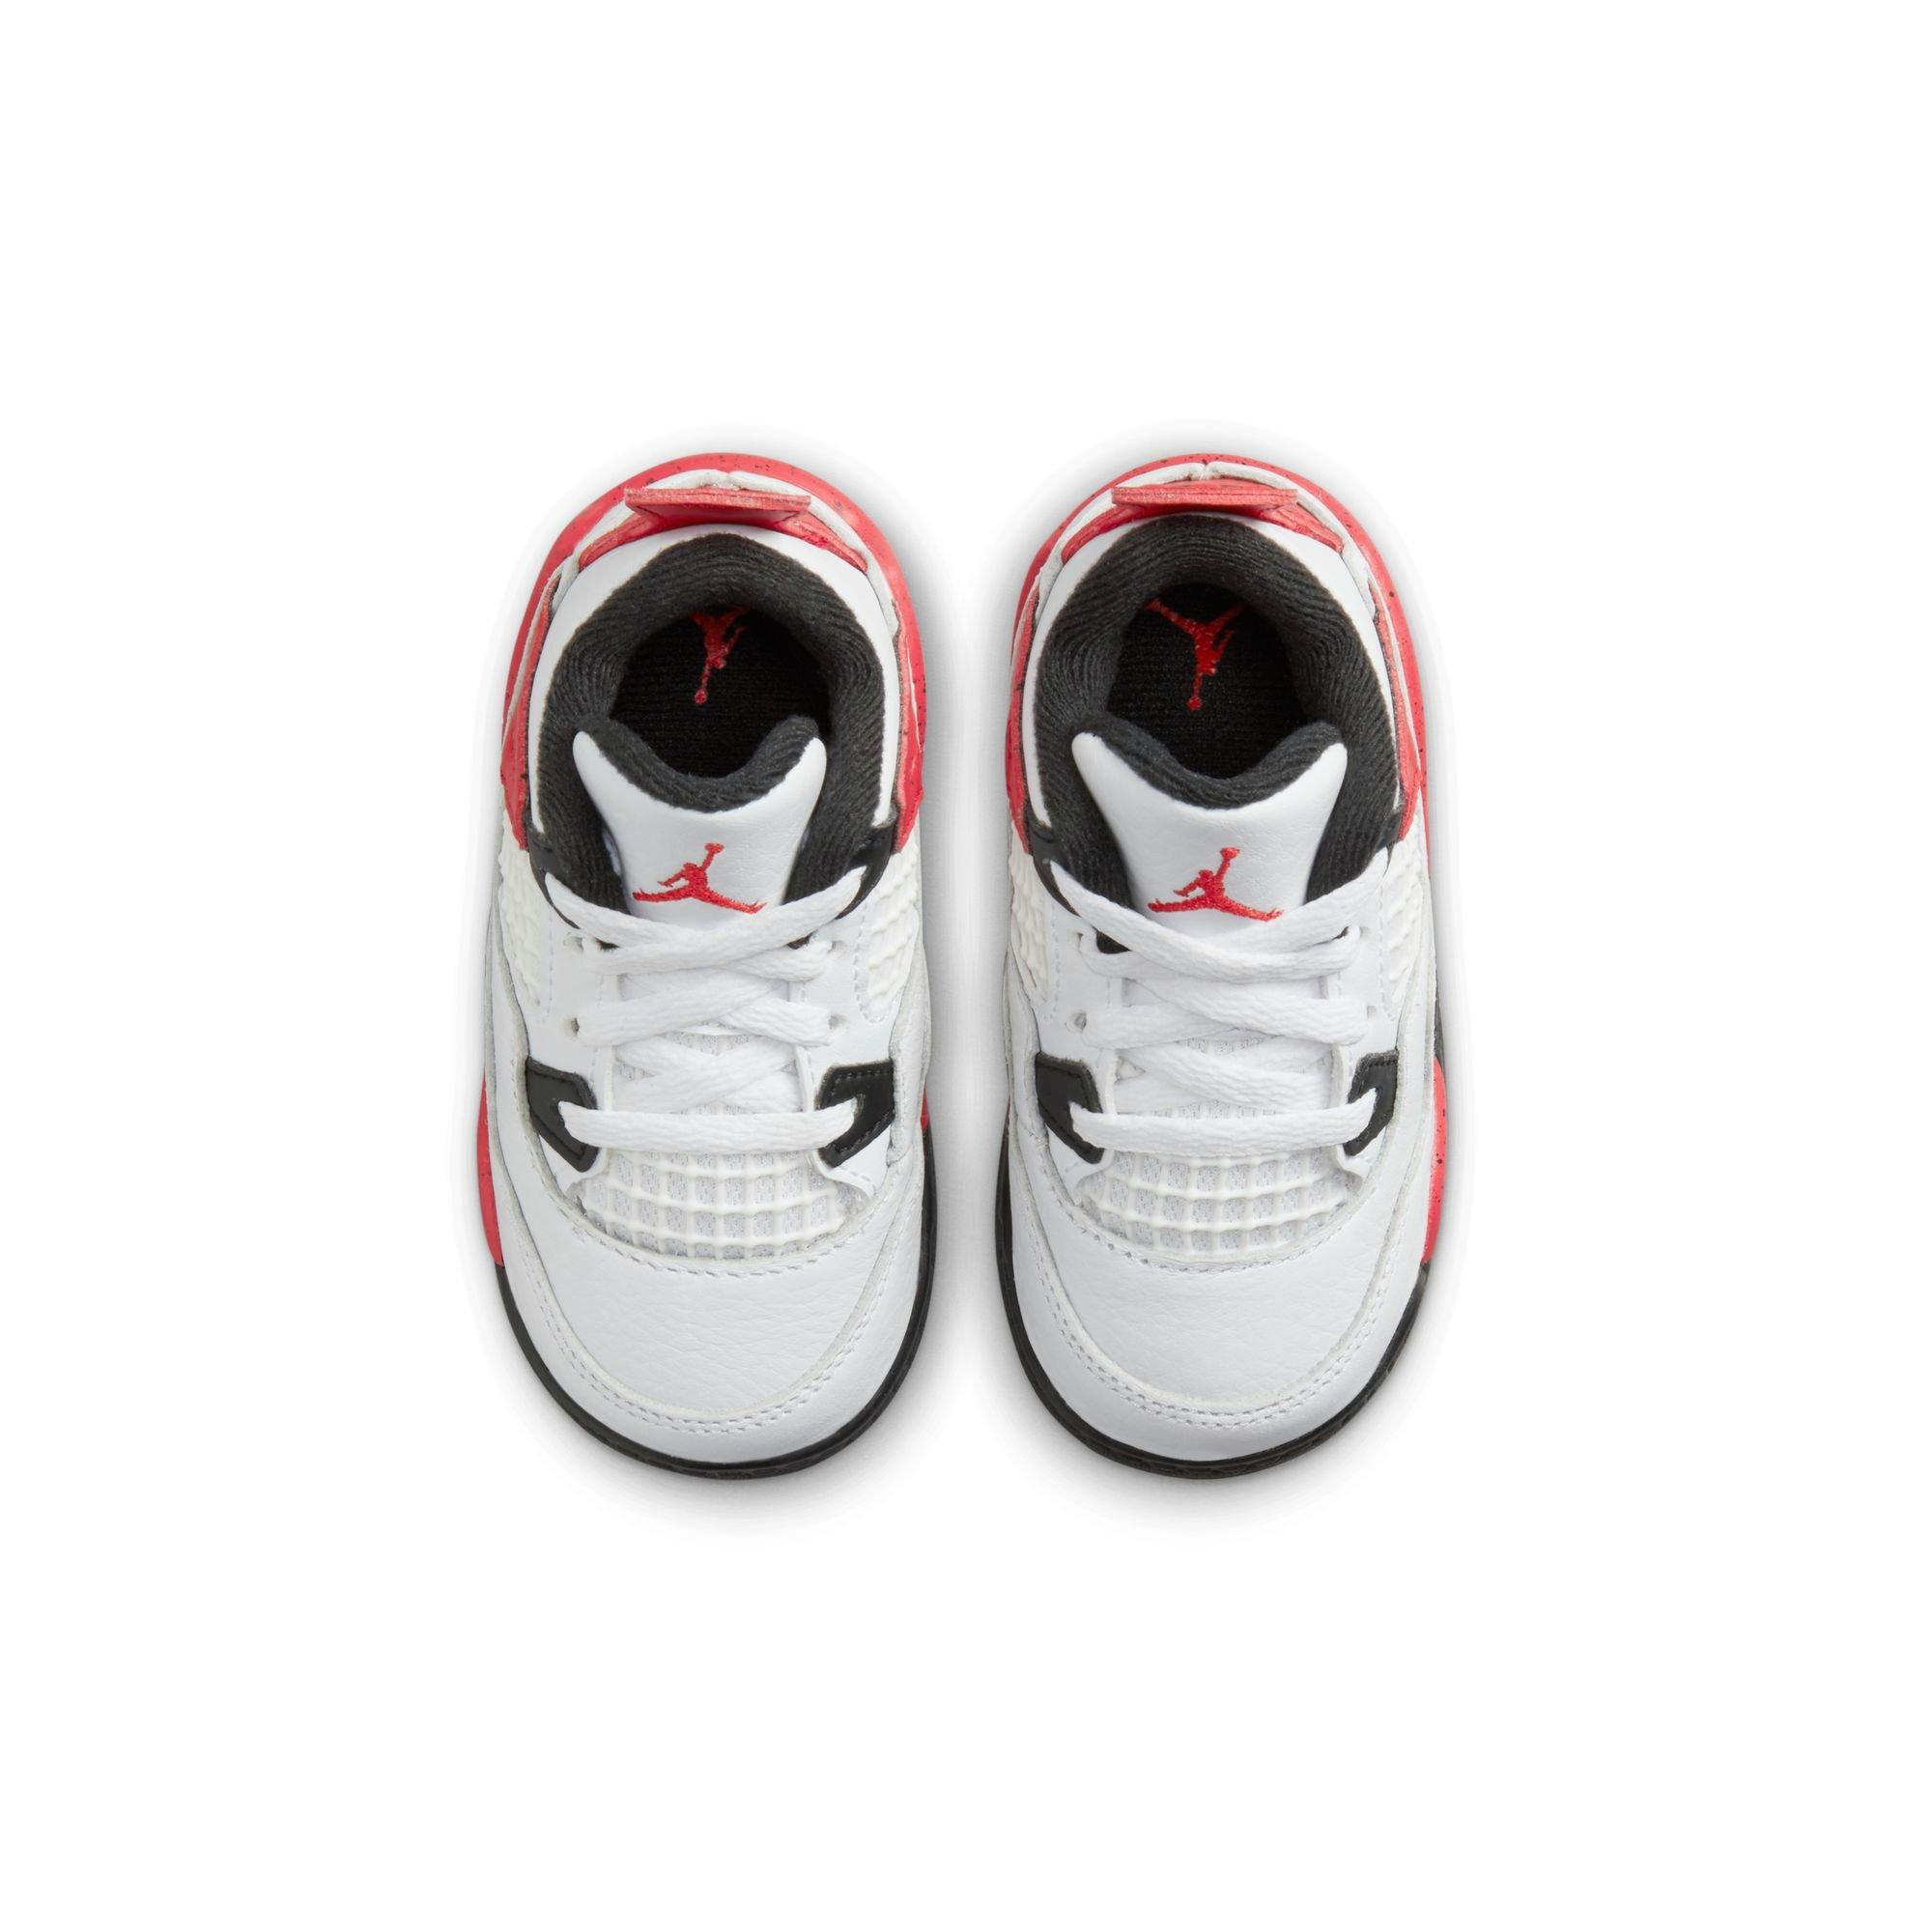 Air Jordan lV (4) Retro GS 'Red Cement' – Kicks & Drip